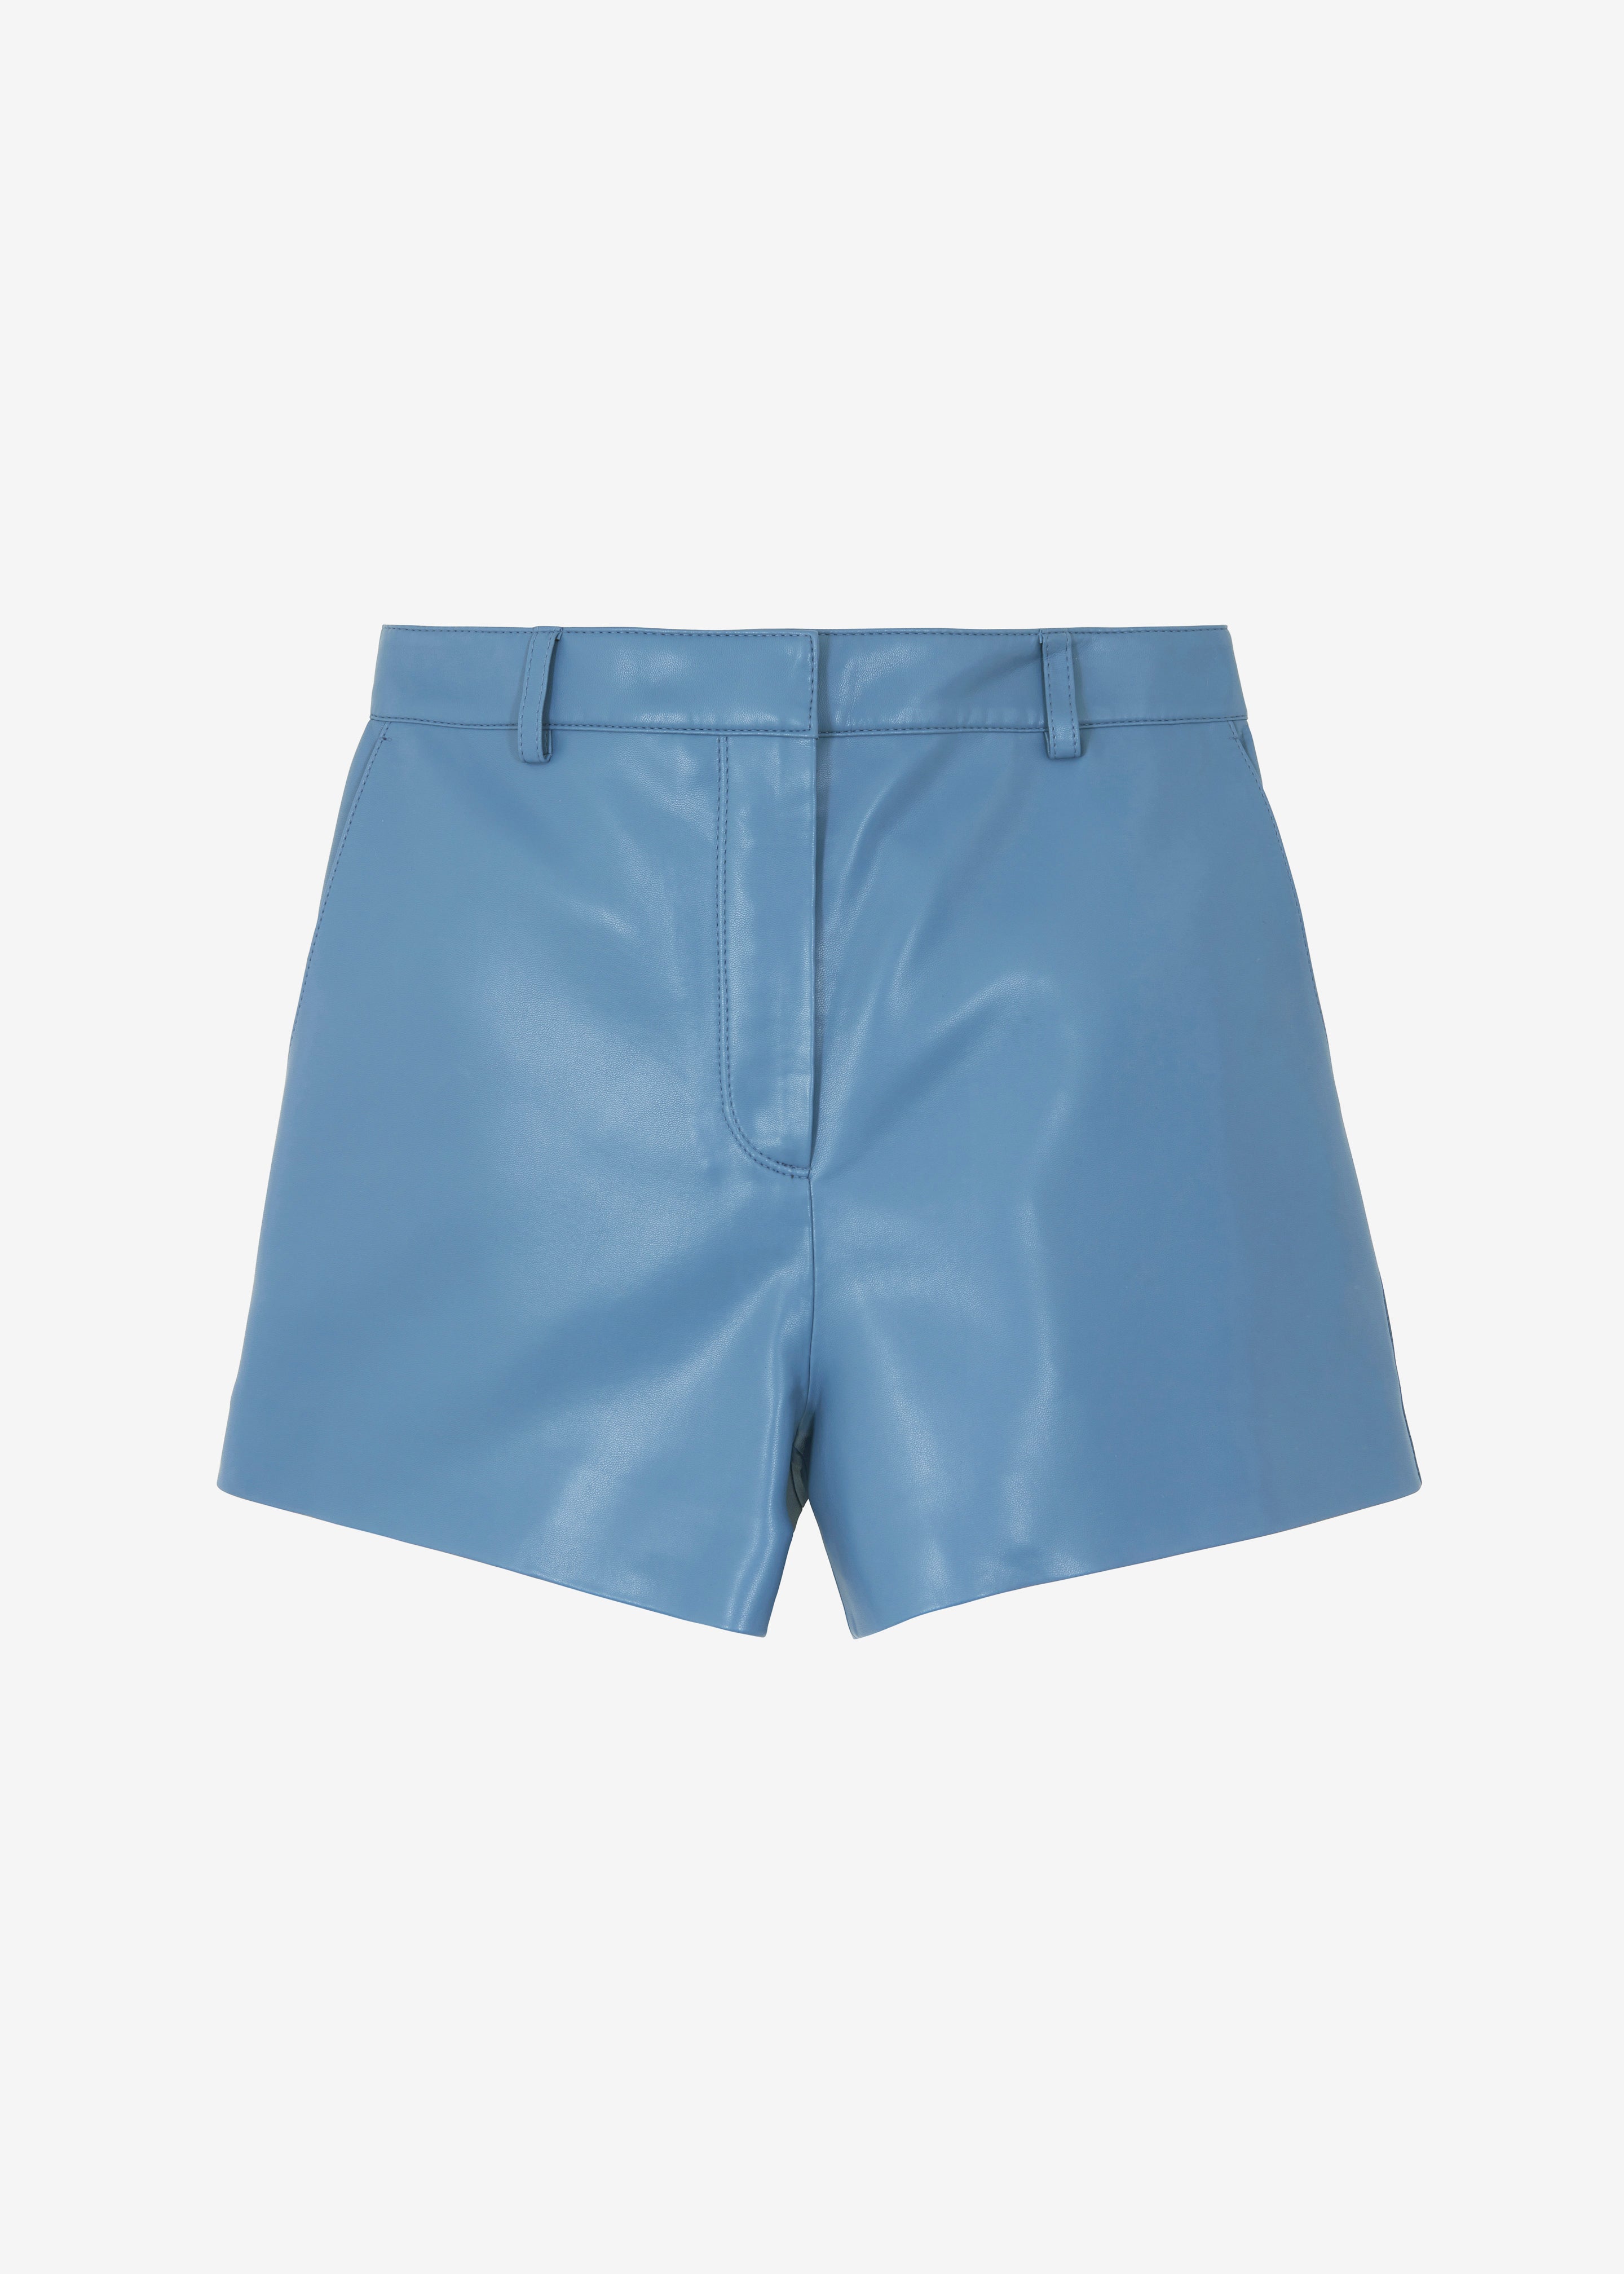 Cassie Faux Leather Mini Shorts - Blue - 11